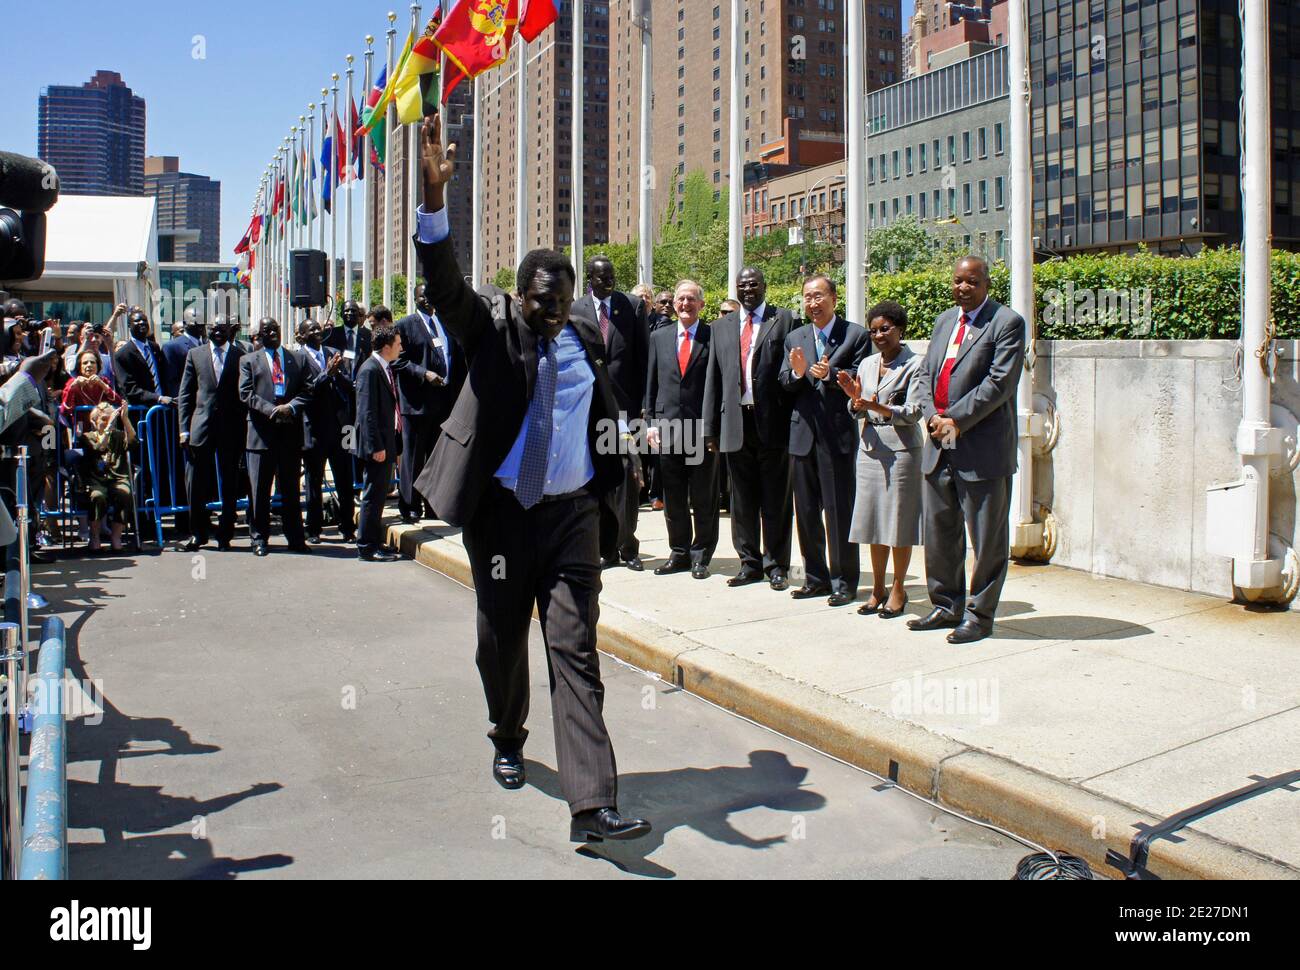 Vereinte Nationen - New York - Juli 14 2011 - EIN Delegierter zeigt seine Euphorie, als die Flagge der Republik Südsudan angehoben wird, um die Aufnahme in den 193. Mitgliedstaat in die Gemeinschaft der Nationen zu markieren. Foto von Luiz Rampelotto/ Europa Newswire/ABACAPRESS.COM Stockfoto